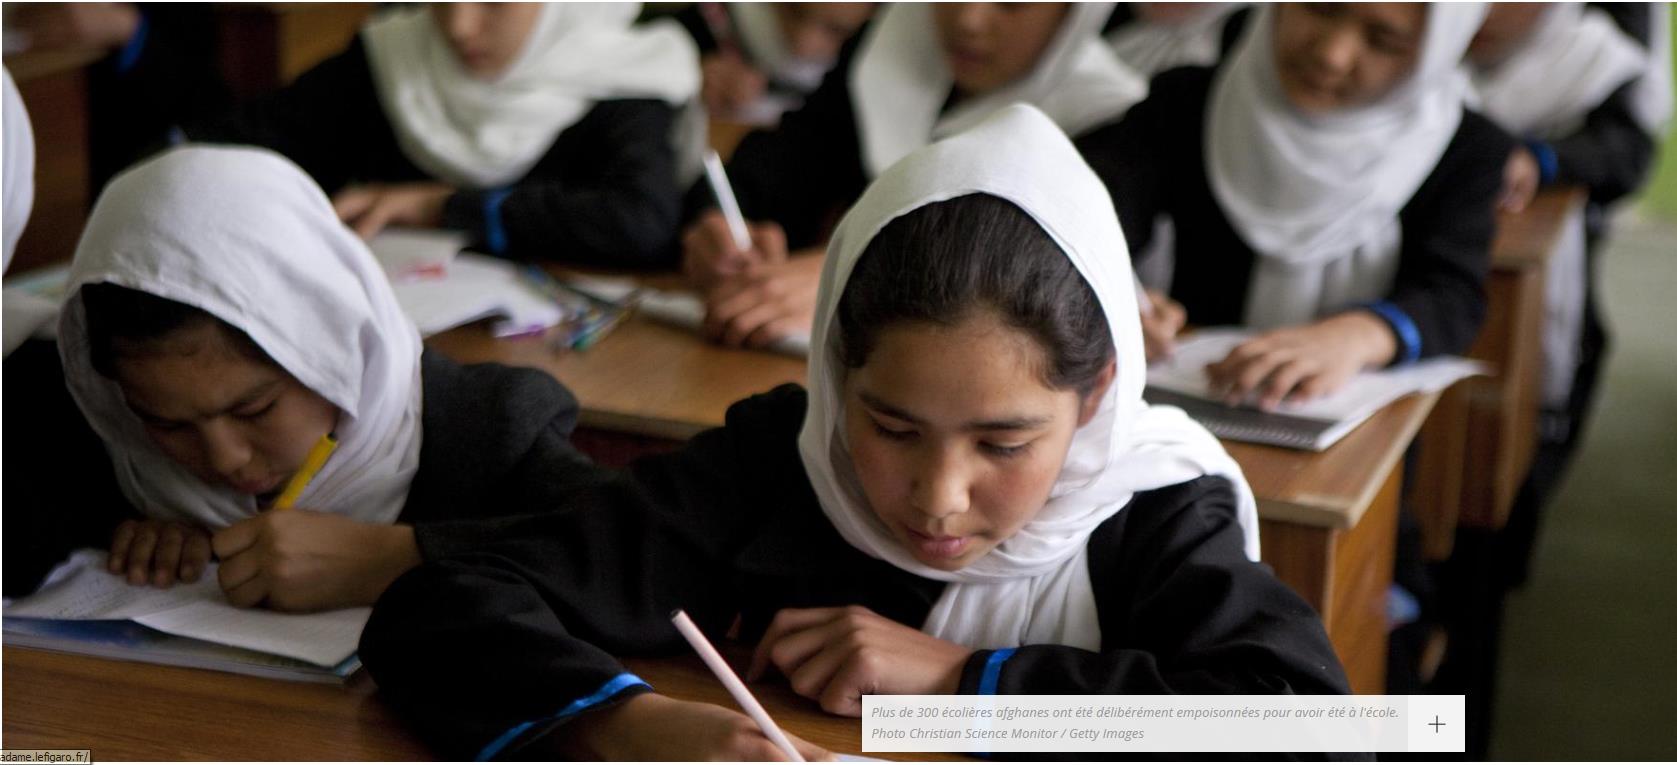 Le Figaro.fr 09 septembre 2015 Début septembre, des centaines de jeunes écolières ont été empoisonnées au gaz dans plusieurs écoles de la ville d'hérat, à l'ouest de l'afghanistan.